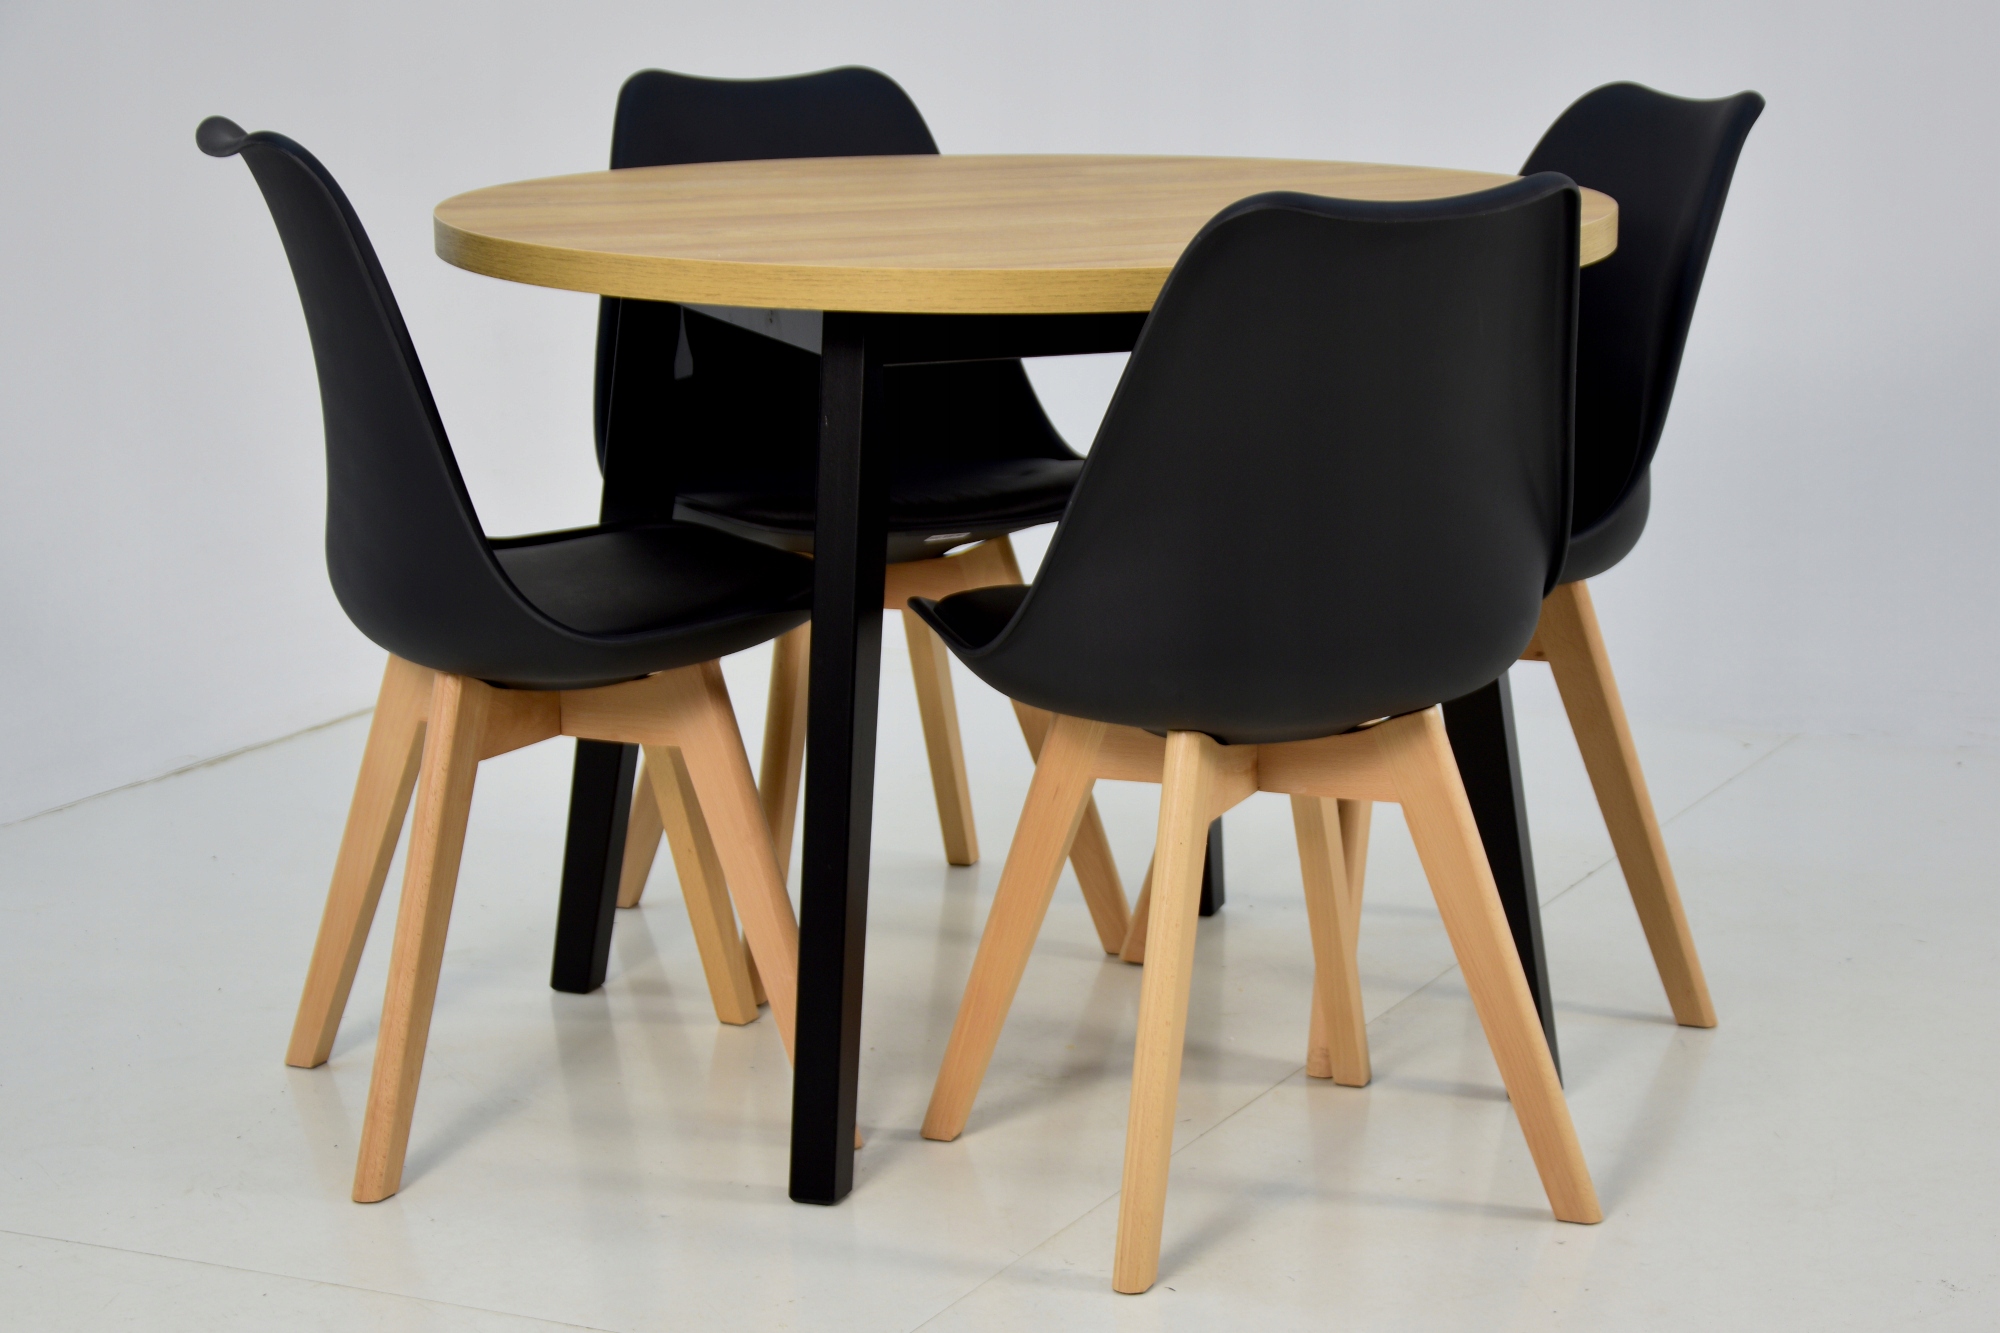 4 скандинавских стула + круглый стол 100 см. Ширина стола 100 см.